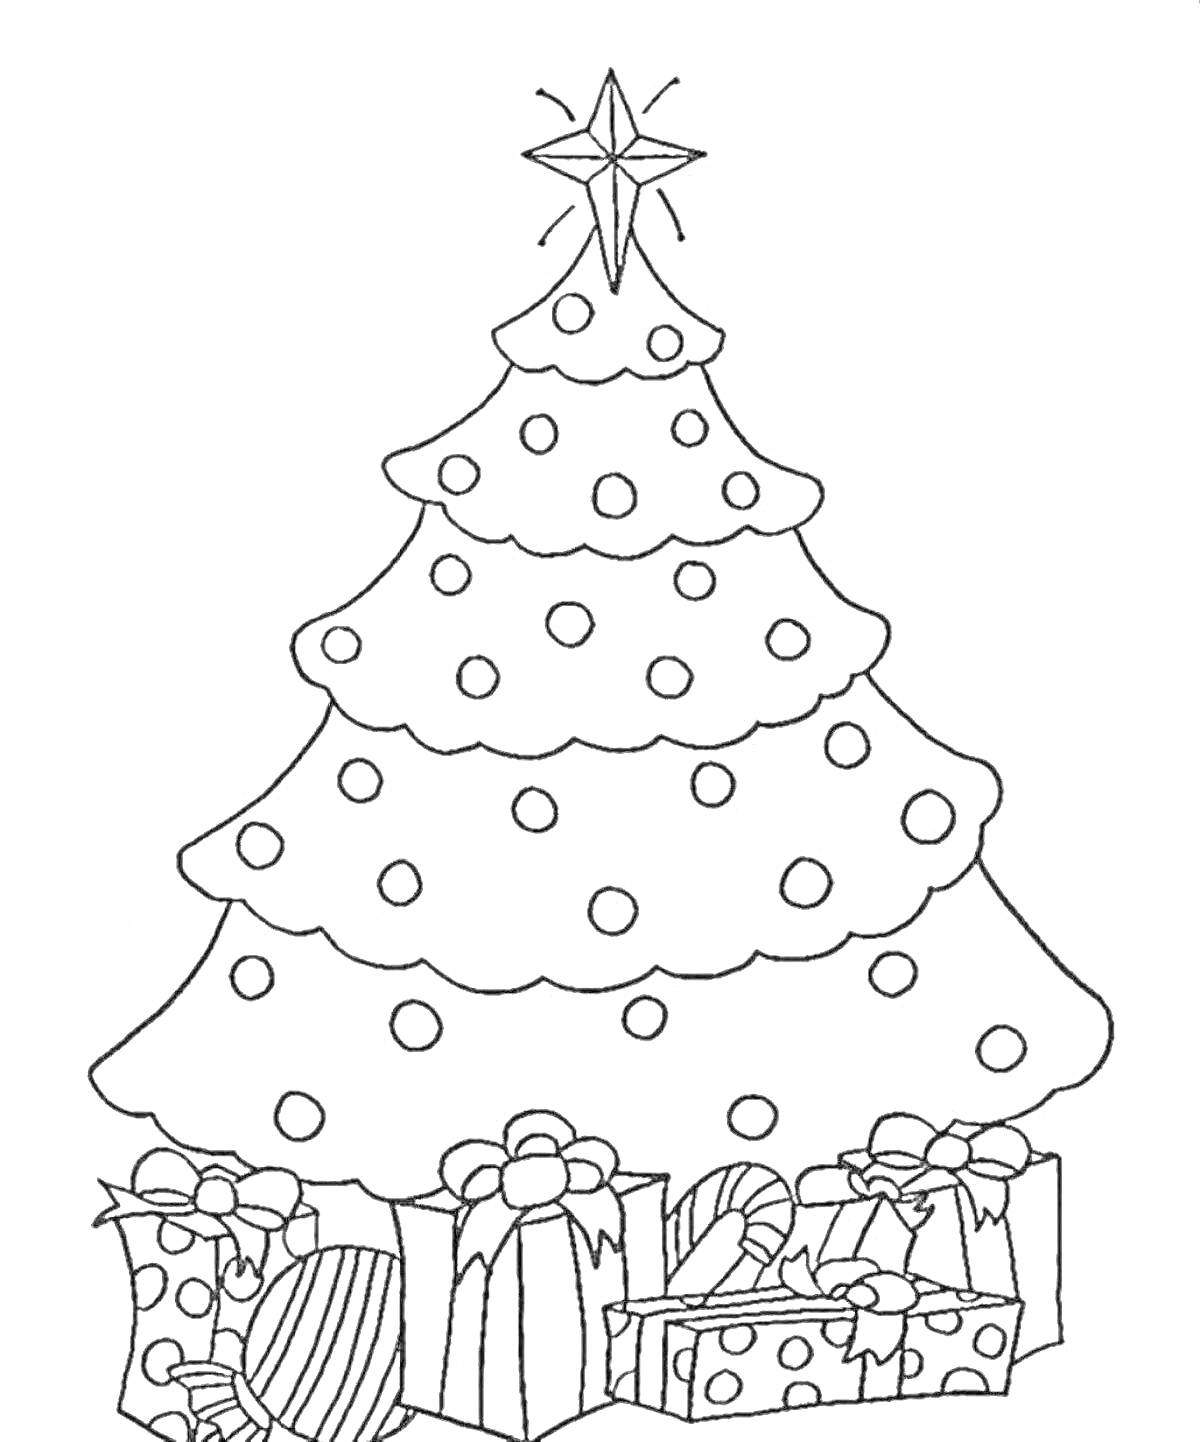 Раскраска Новогодняя елка с игрушками, звездой на вершине и подарками под елкой